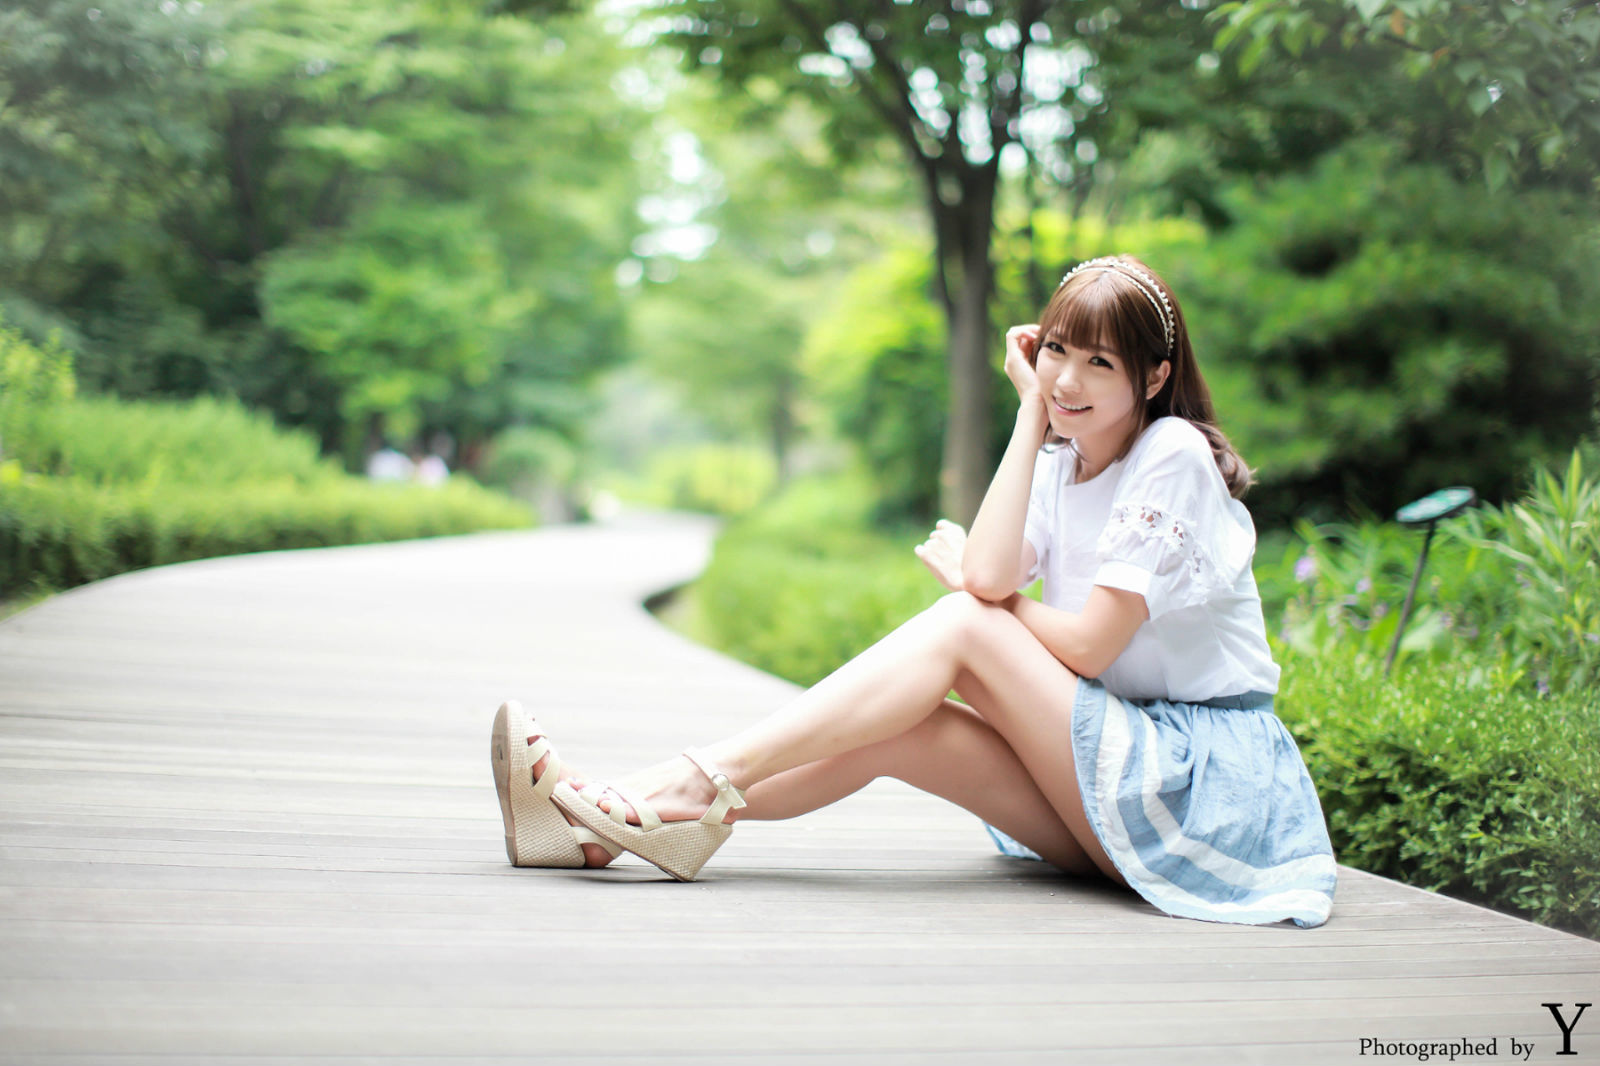 Li Enhui “Park short skirt outside shoot” [Korean beauty] photo set